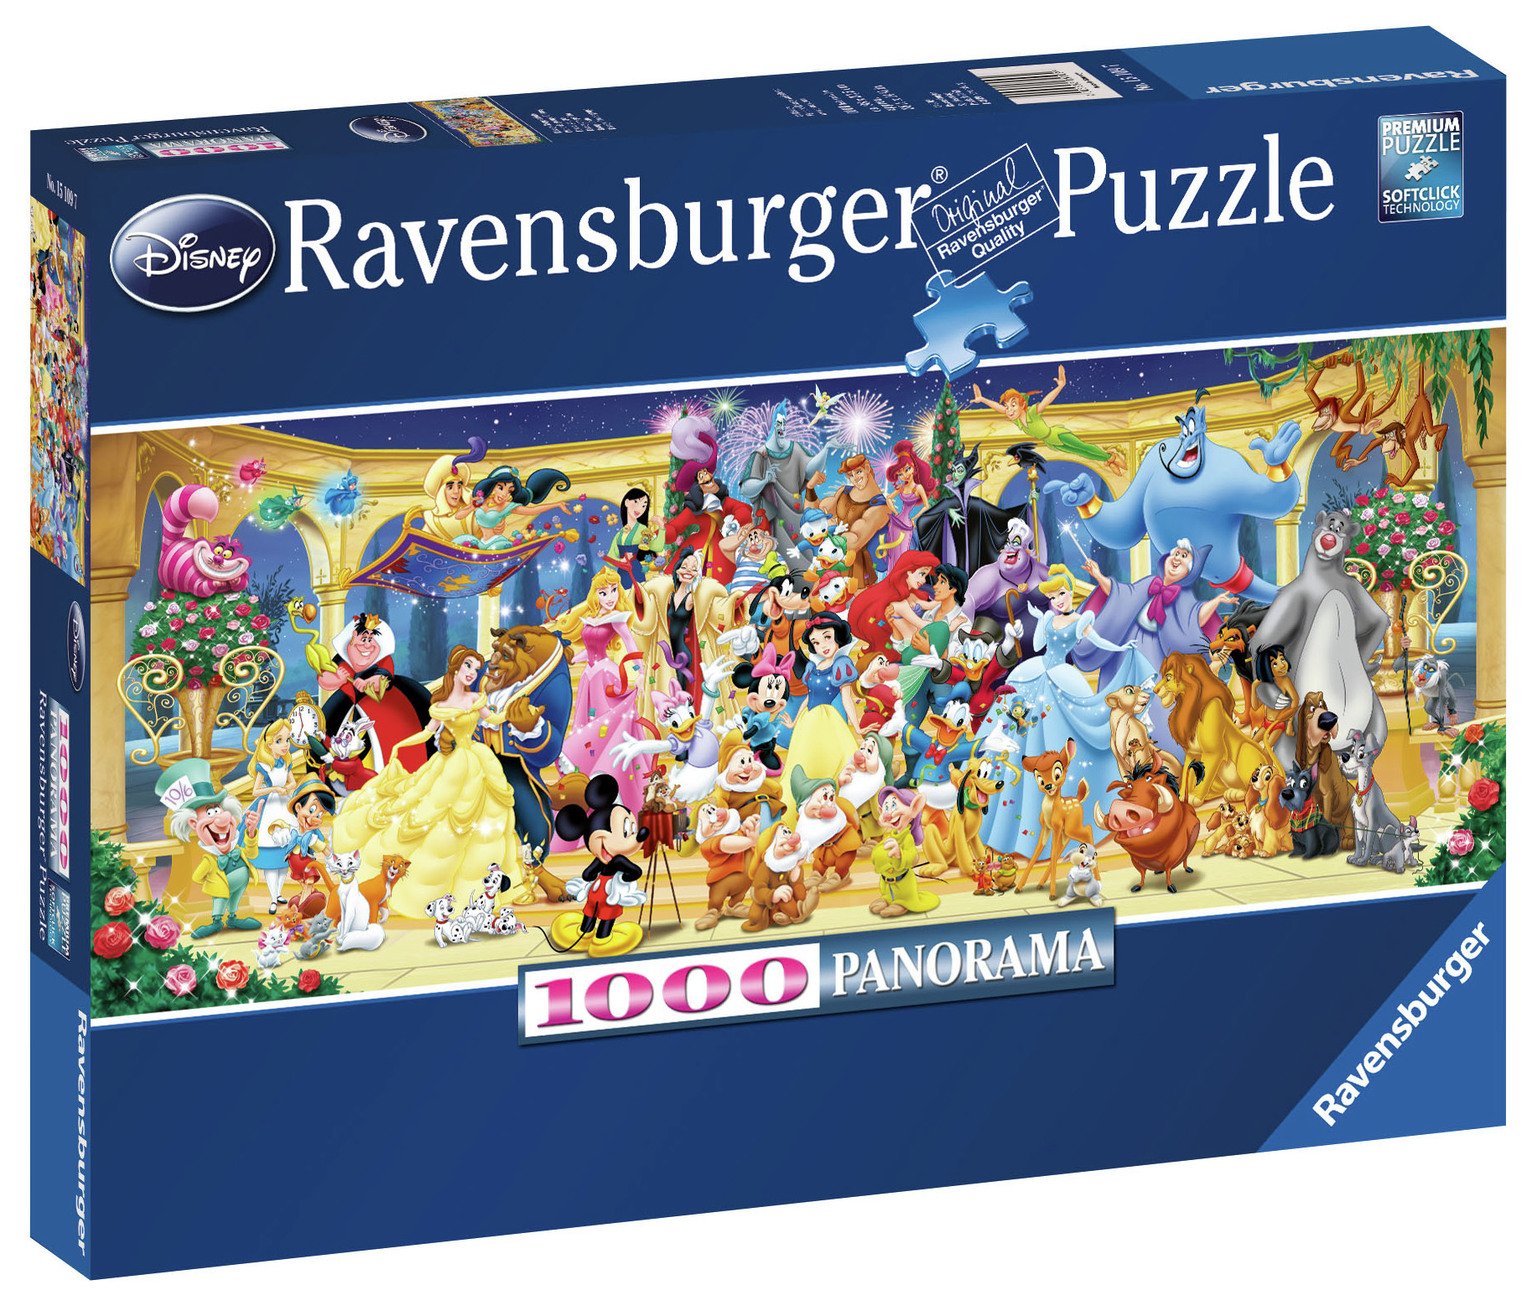 Disney Panoramic 1000 Piece Jigsaw Puzzle